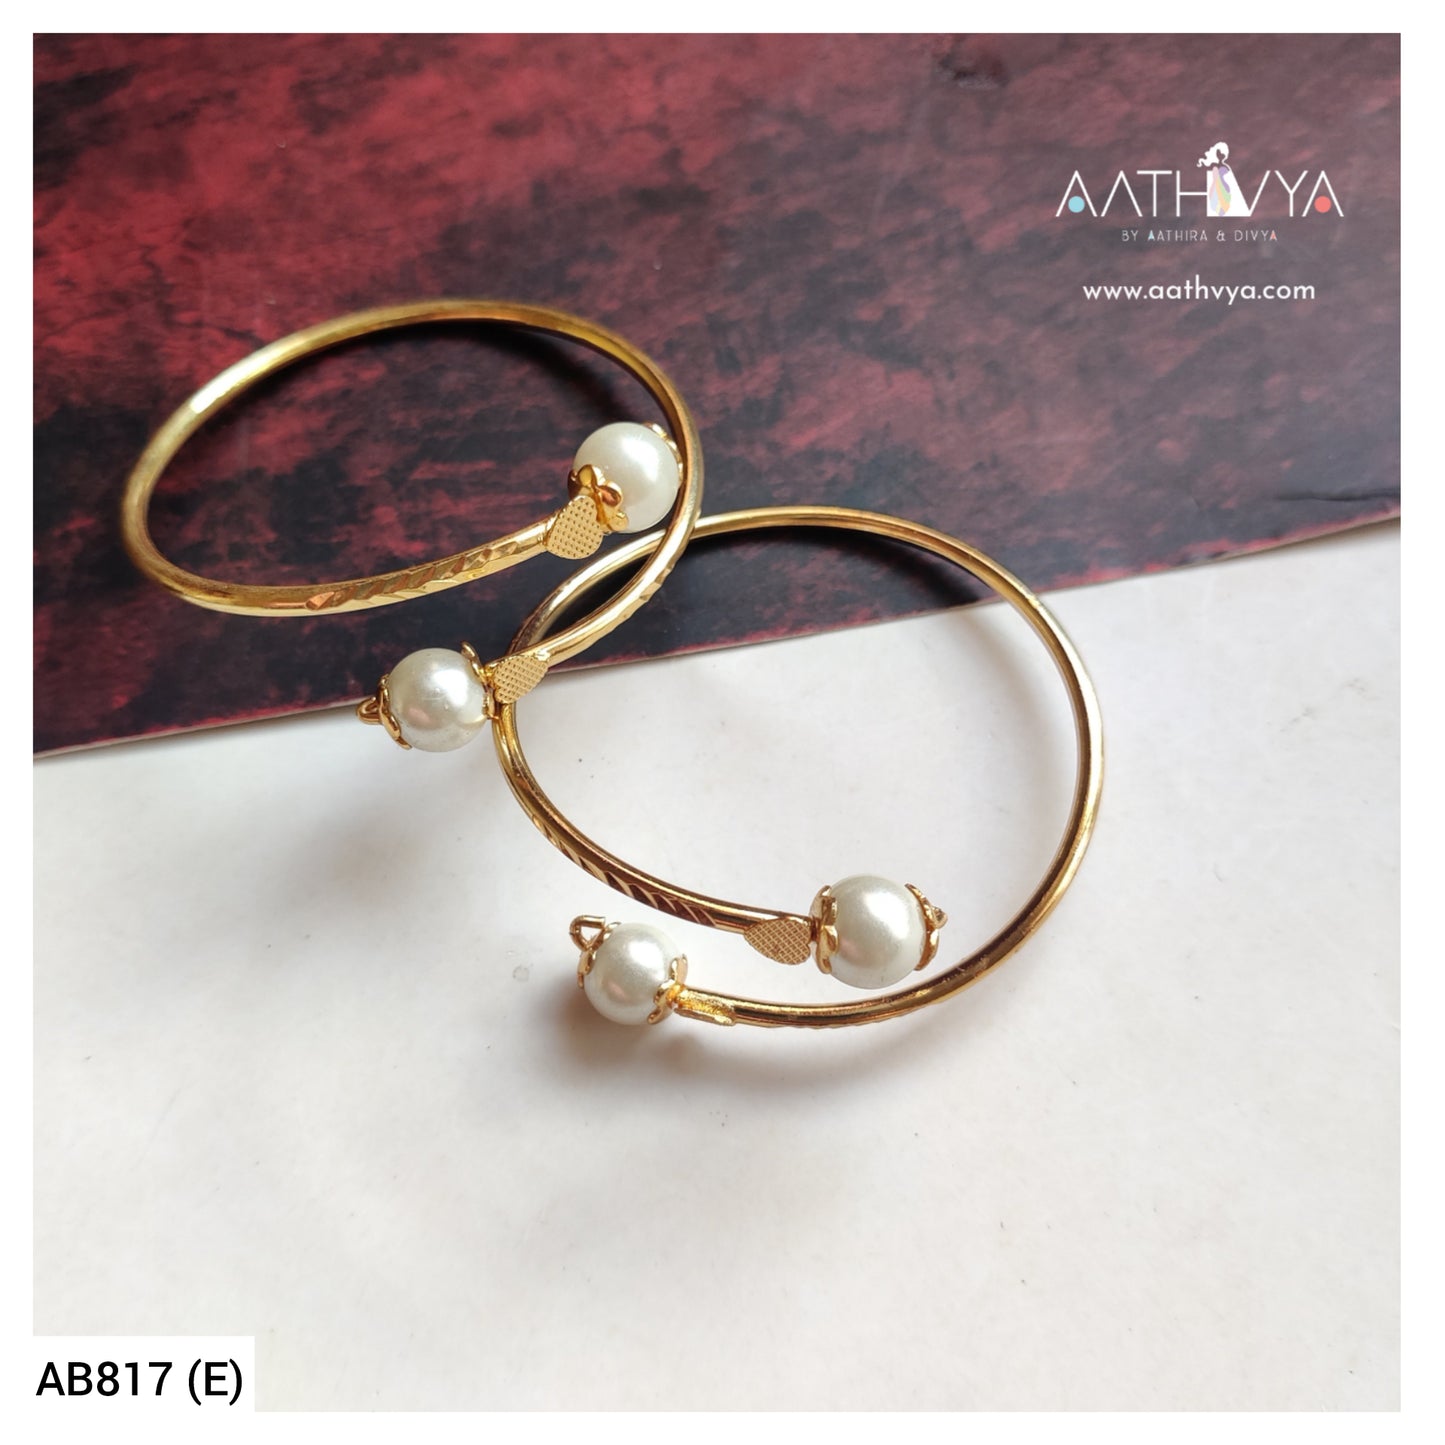 Pearl Adjustable Bracelet - AB817 (E)